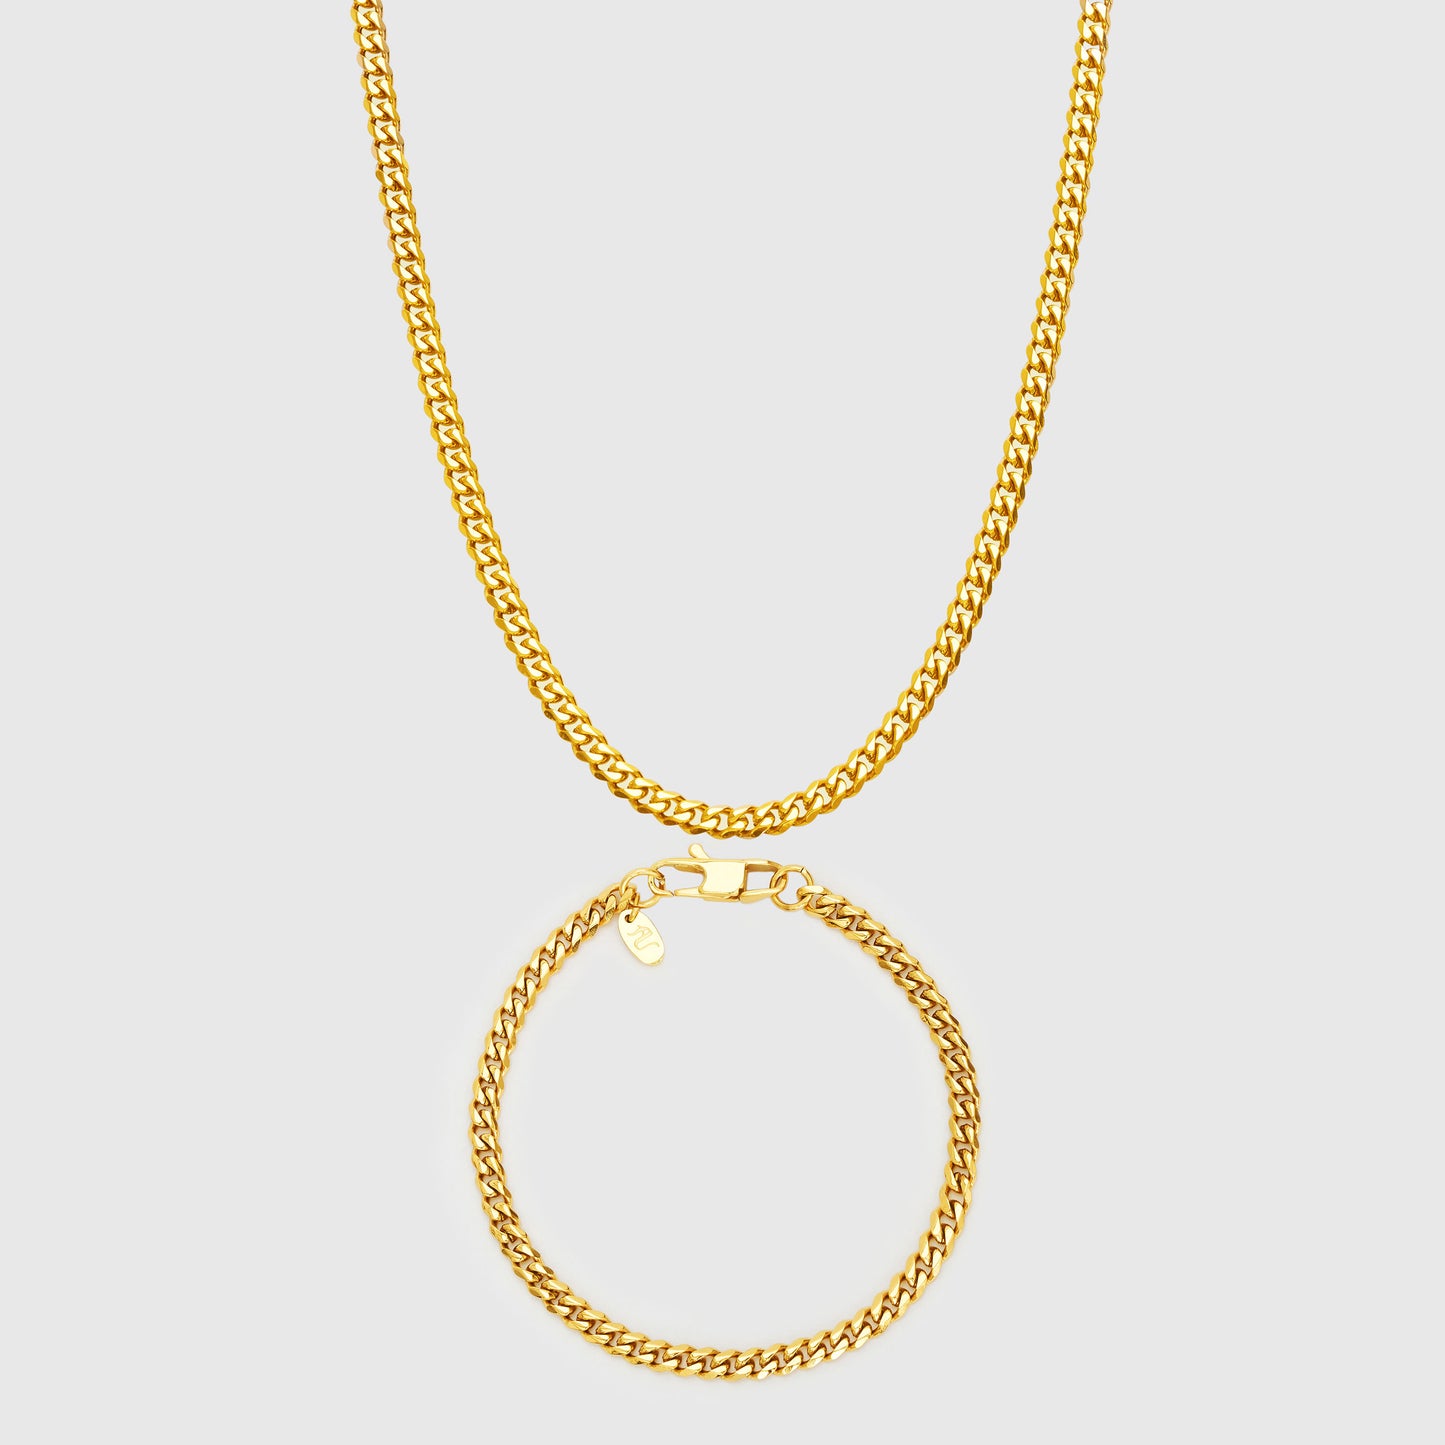 Gold Cuban Link Chain Necklace Bracelet 4 mm Apollo Untold Men's Jewellery